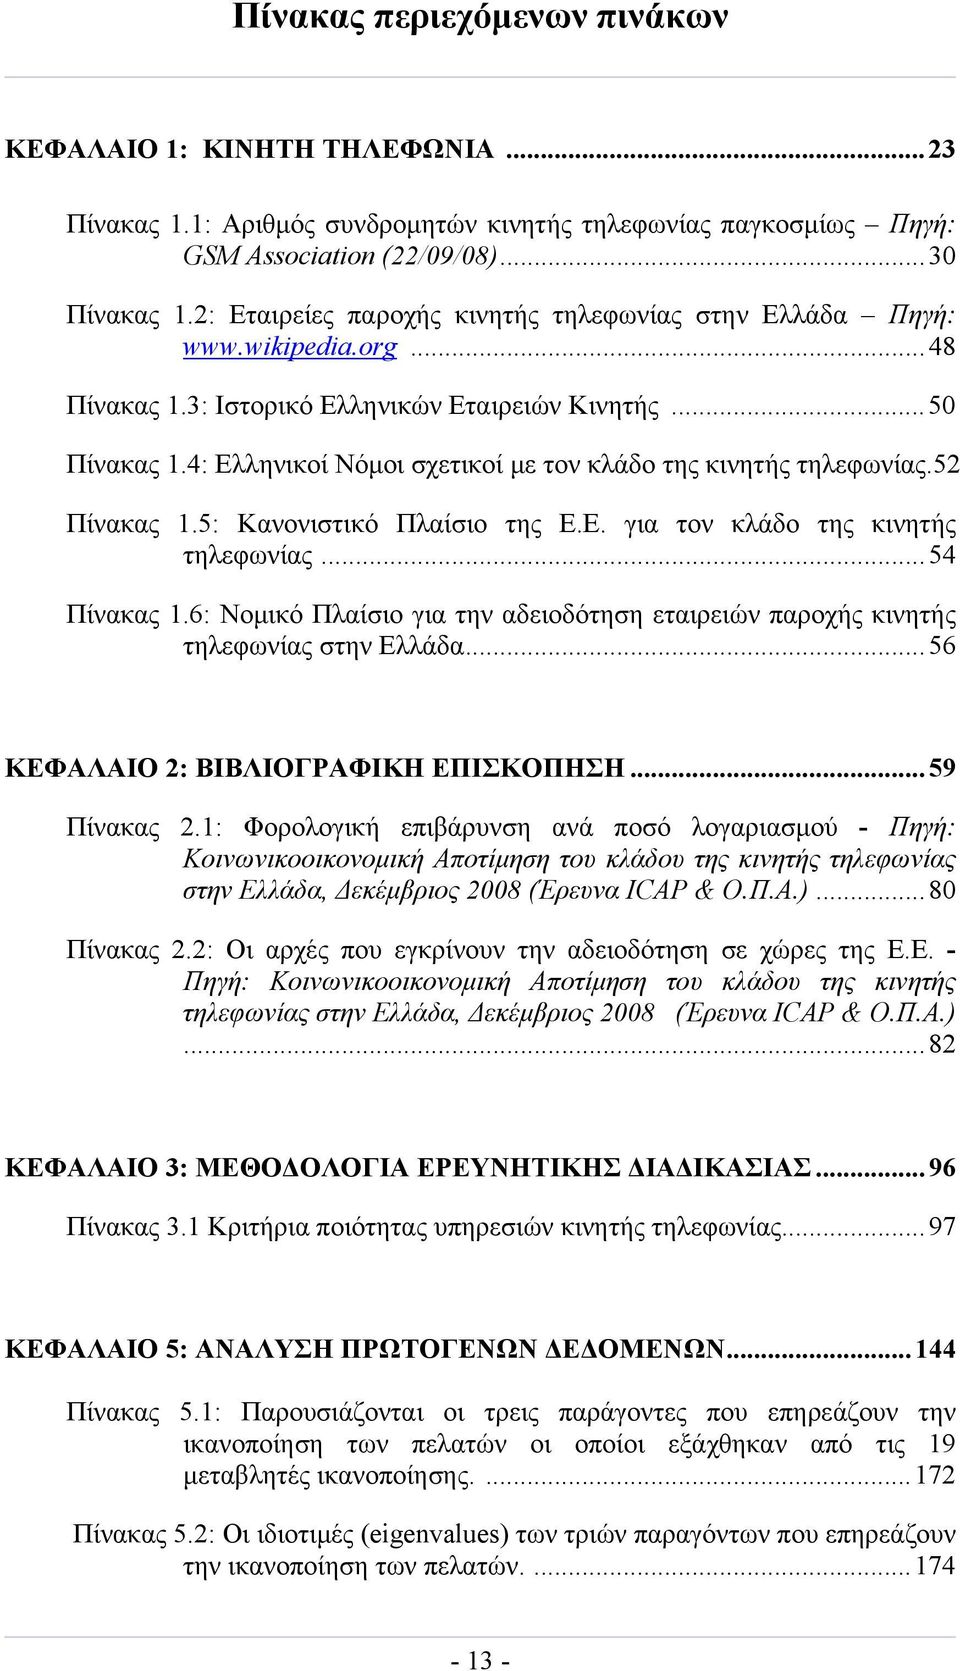 4: Ελληνικοί Νόμοι σχετικοί με τον κλάδο της κινητής τηλεφωνίας.52 Πίνακας 1.5: Κανονιστικό Πλαίσιο της Ε.Ε. για τον κλάδο της κινητής τηλεφωνίας...54 Πίνακας 1.